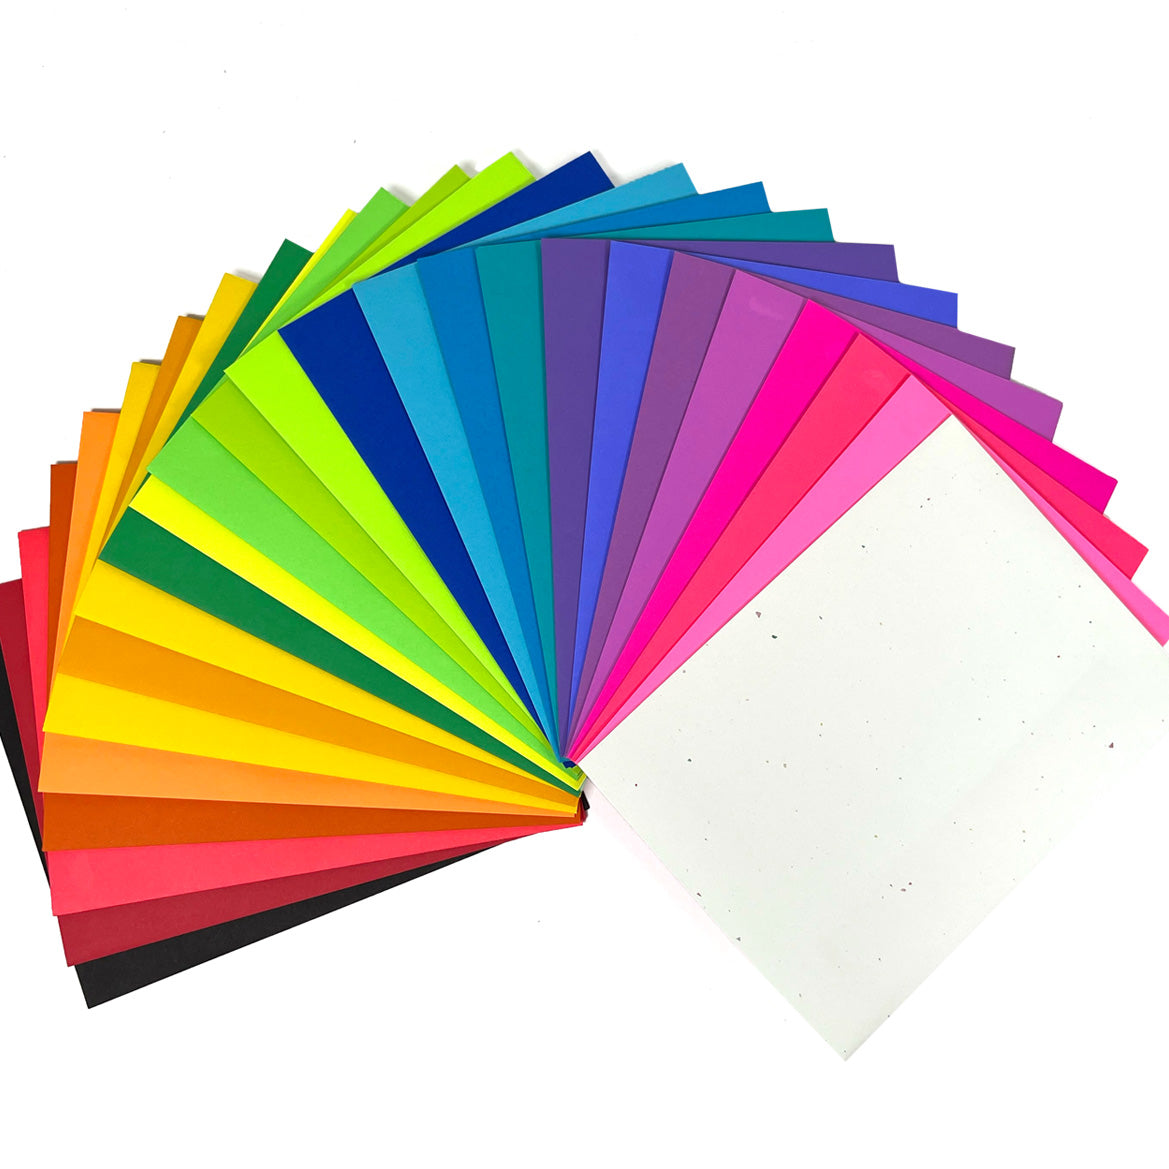 Astrobrights Color Cardstock, Letter, Smooth - 100 / Pack - Eclipse Black 